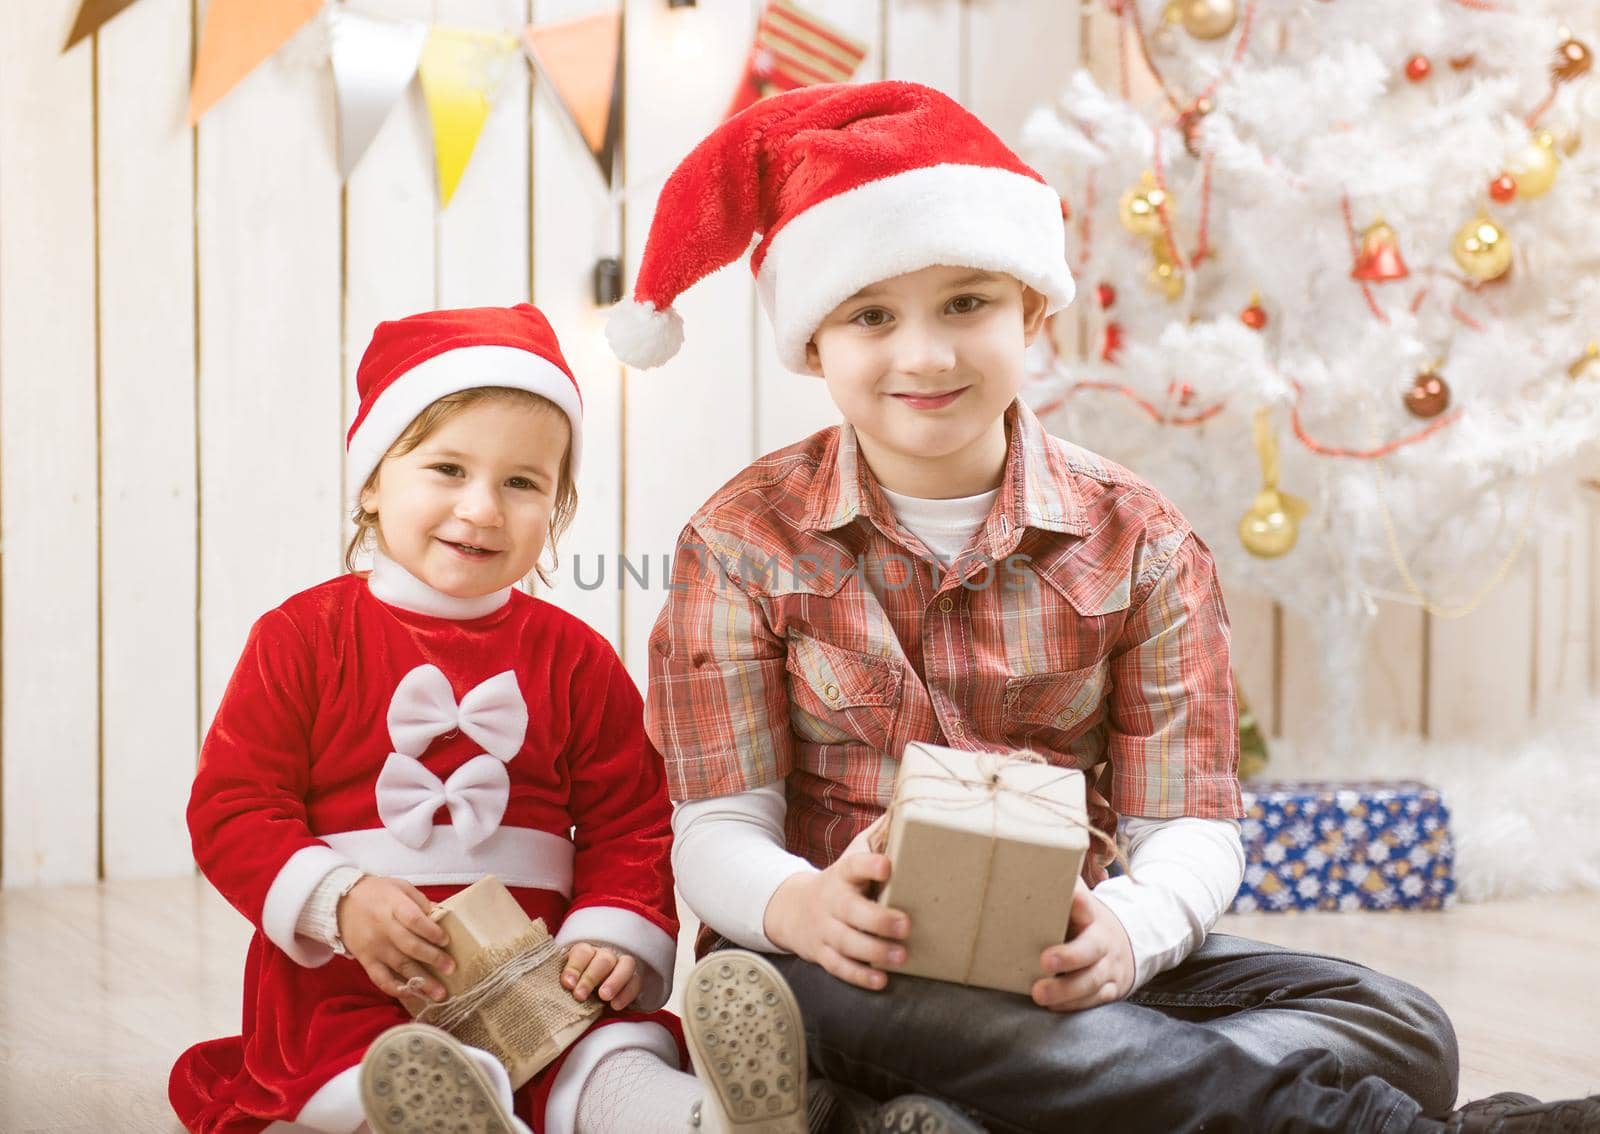 Kids in red santa hats sitting in decorated room by GekaSkr